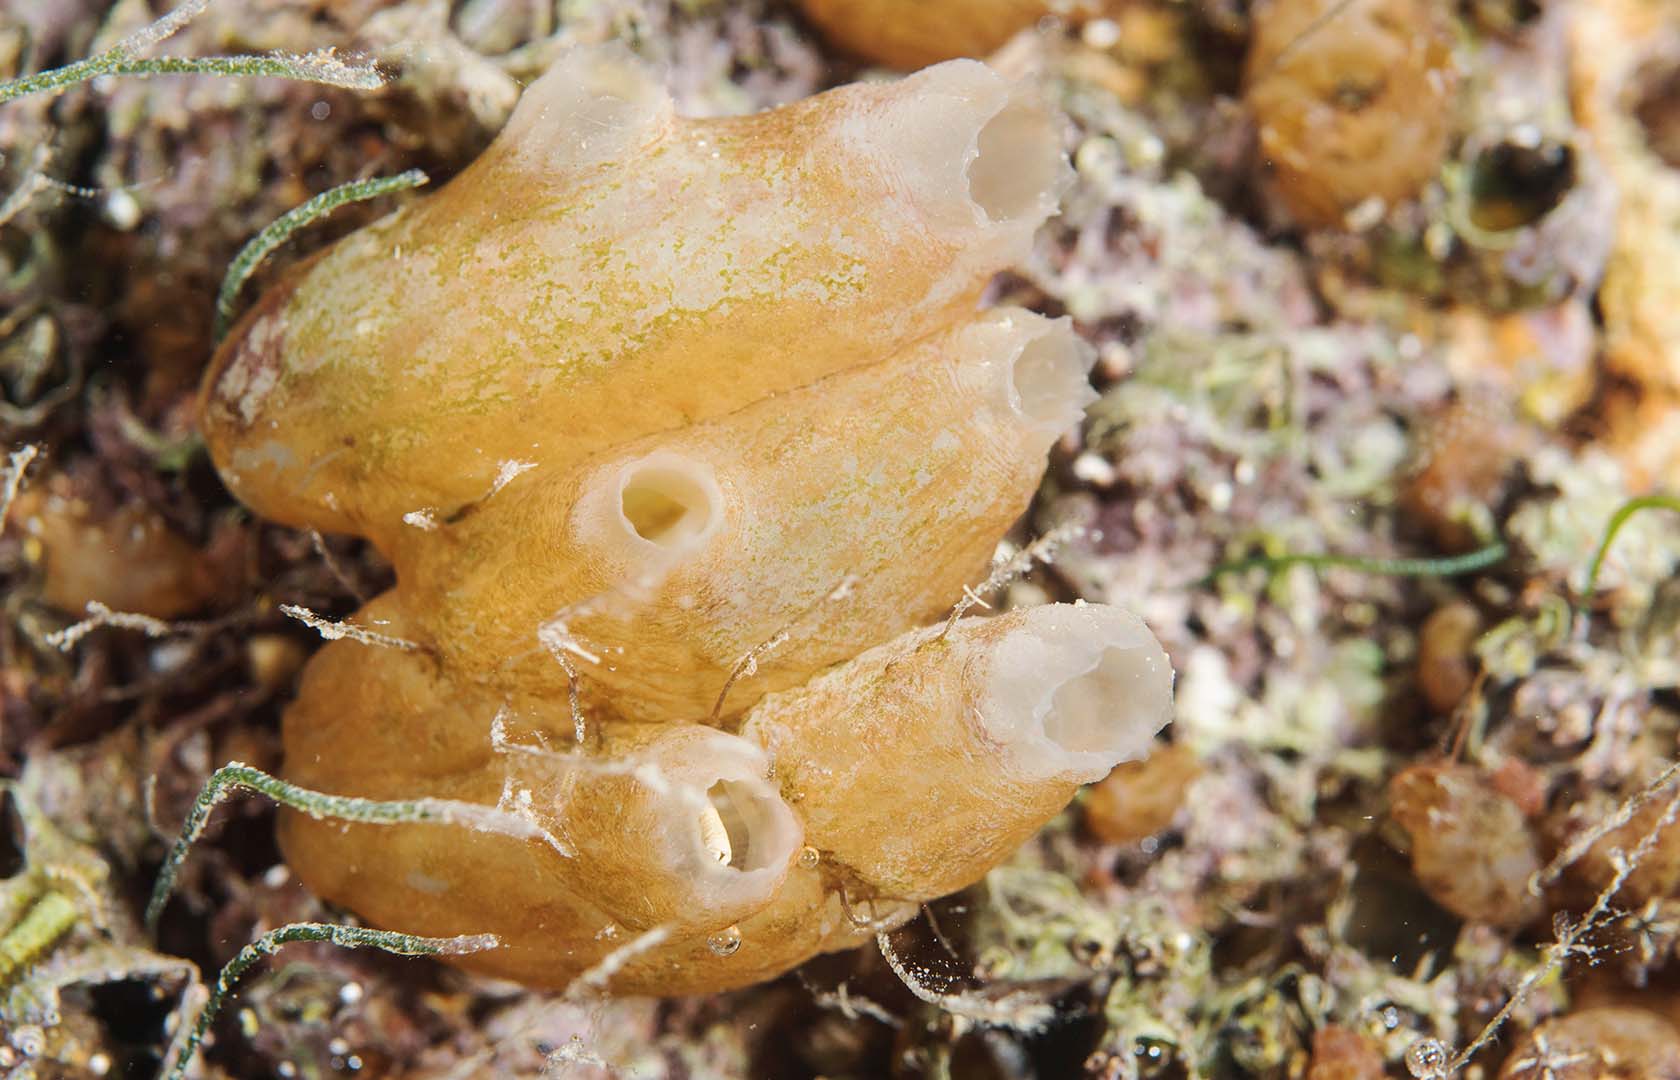 Su forma y coloración puede ser muy variable como ocurre con muchas ascidias.